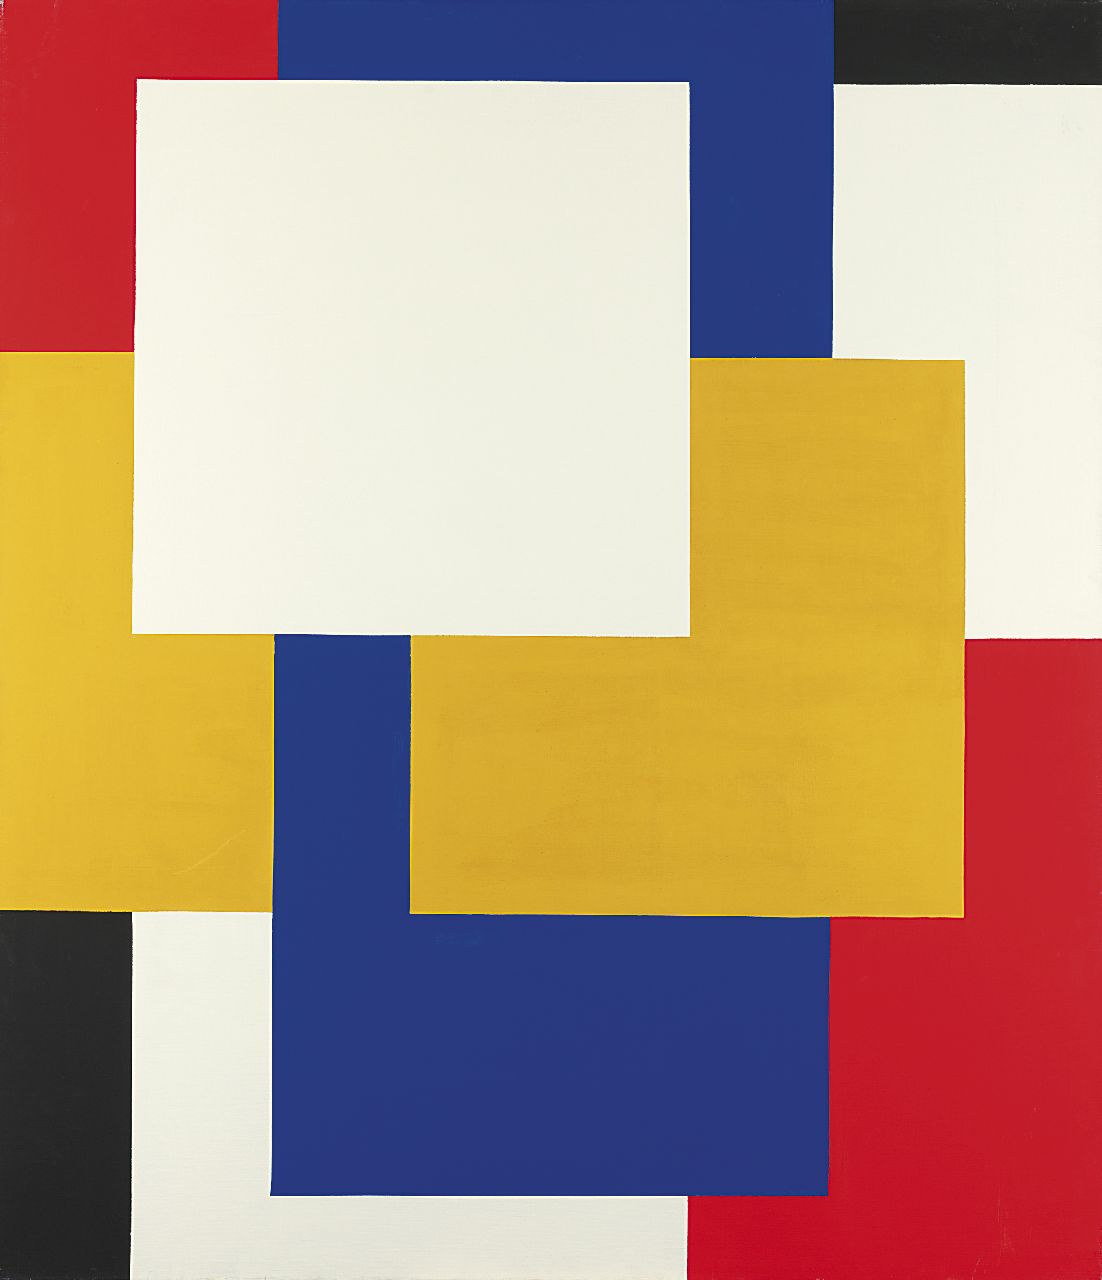 Berg S.R. van den | Sybren Ridsert 'Siep' van den Berg, Compositie, olieverf op doek 150,0 x 130,0 cm, gesigneerd op spieraam met initialen en te dateren jaren '70